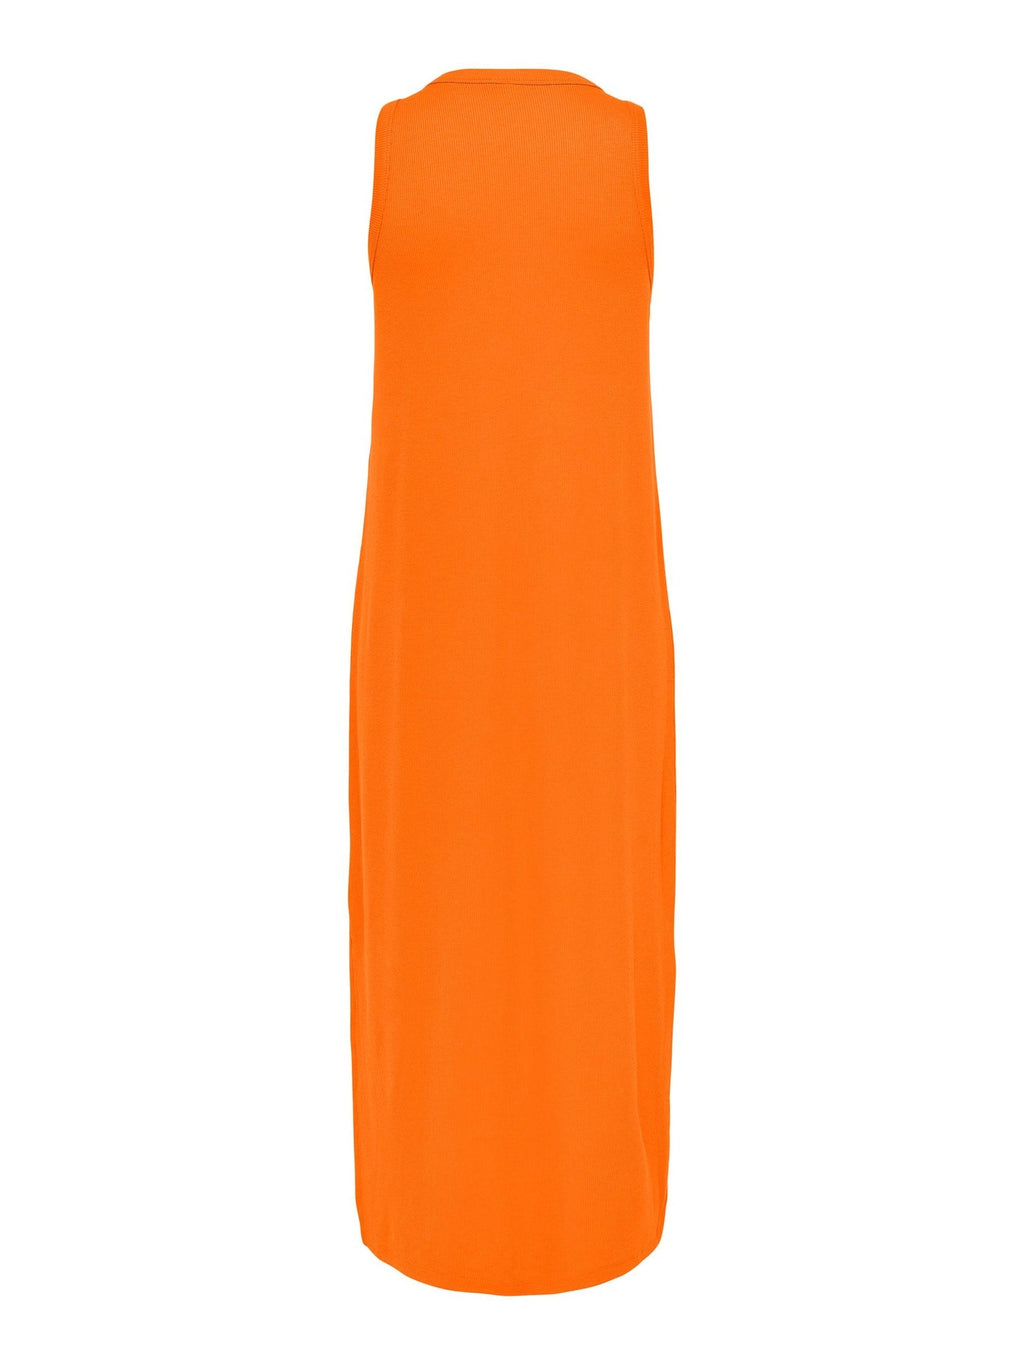 夏季连衣裙 - 柿子橙色